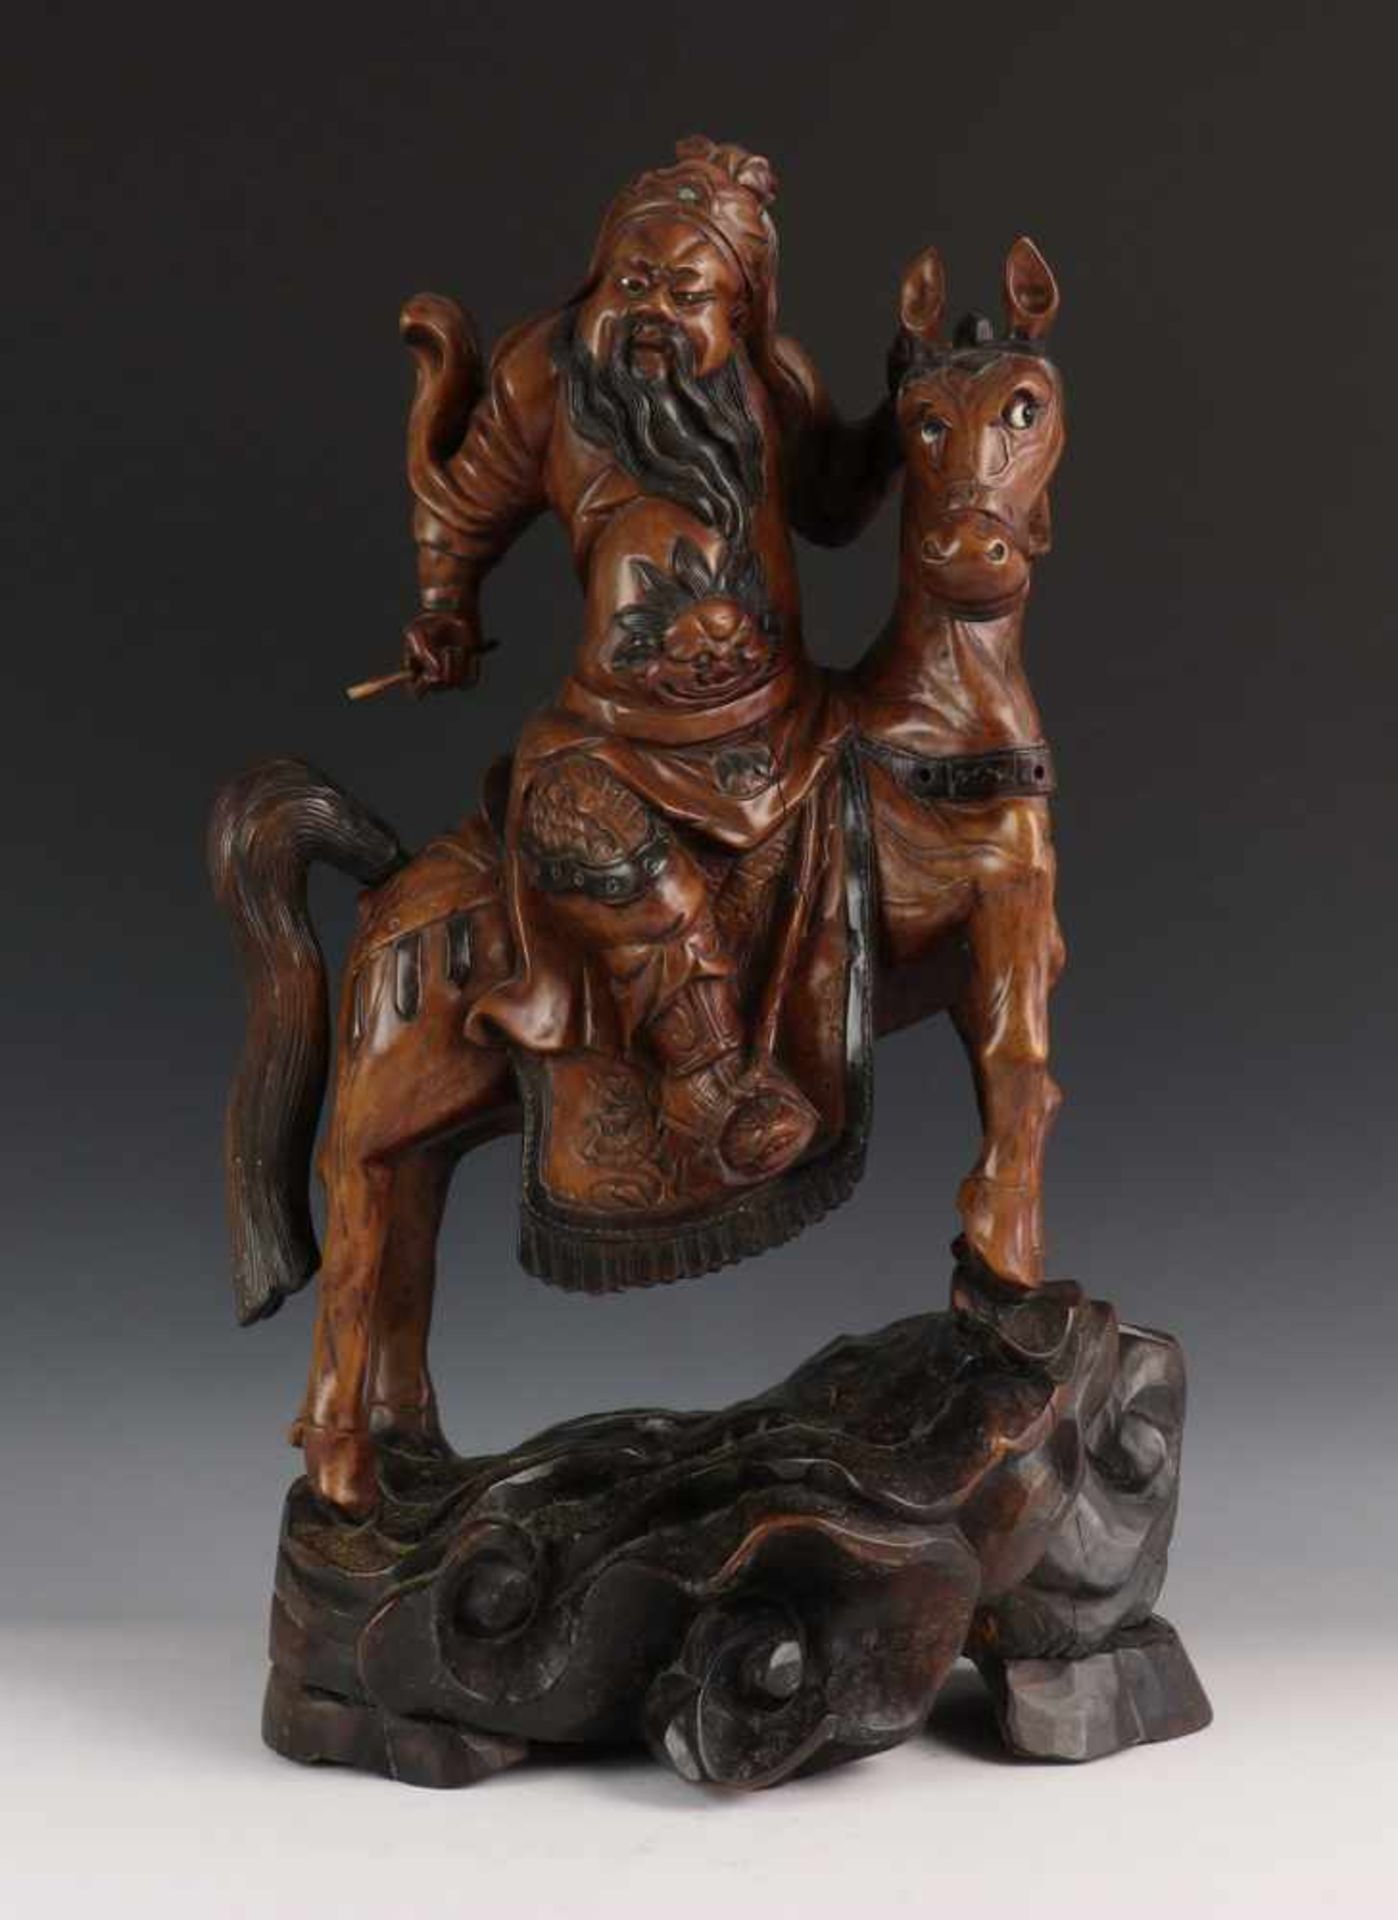 China, gestoken houten beeld van Mongoolse krijger te paard, ca. 1900;man met vaandel in een hand,